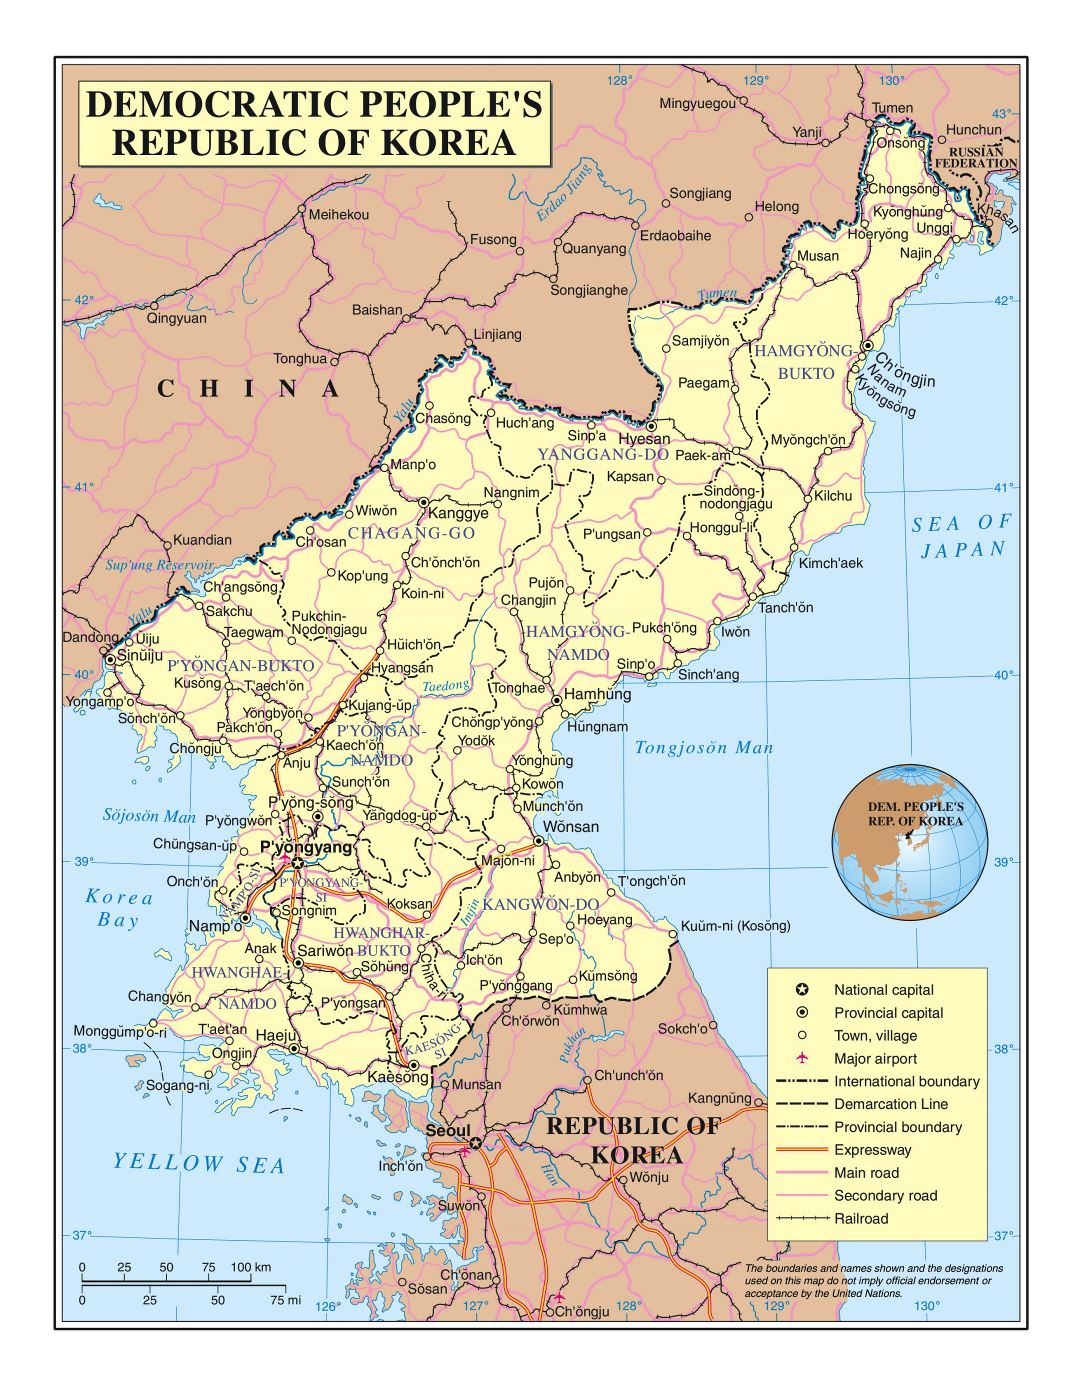 Grande detallado mapa político y administrativo de Corea del Norte (RPDC) con carreteras, ferrocarriles, ciudades y aeropuertos